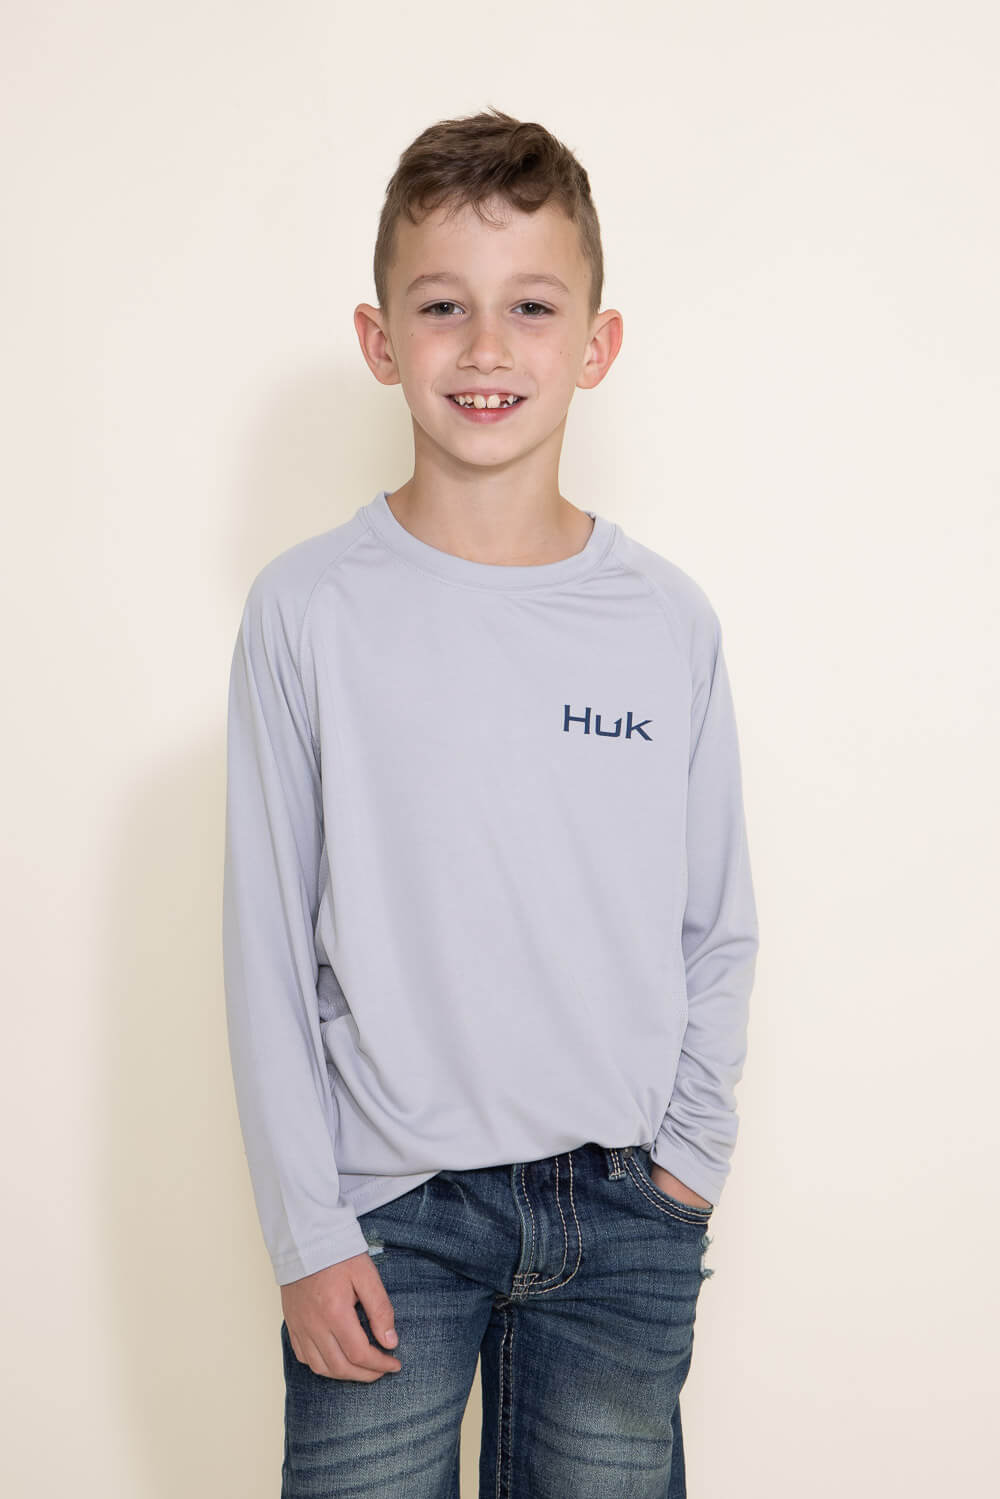 Huk Icon X Youth Large White Long Sleeve Performance Fishing Shirt 